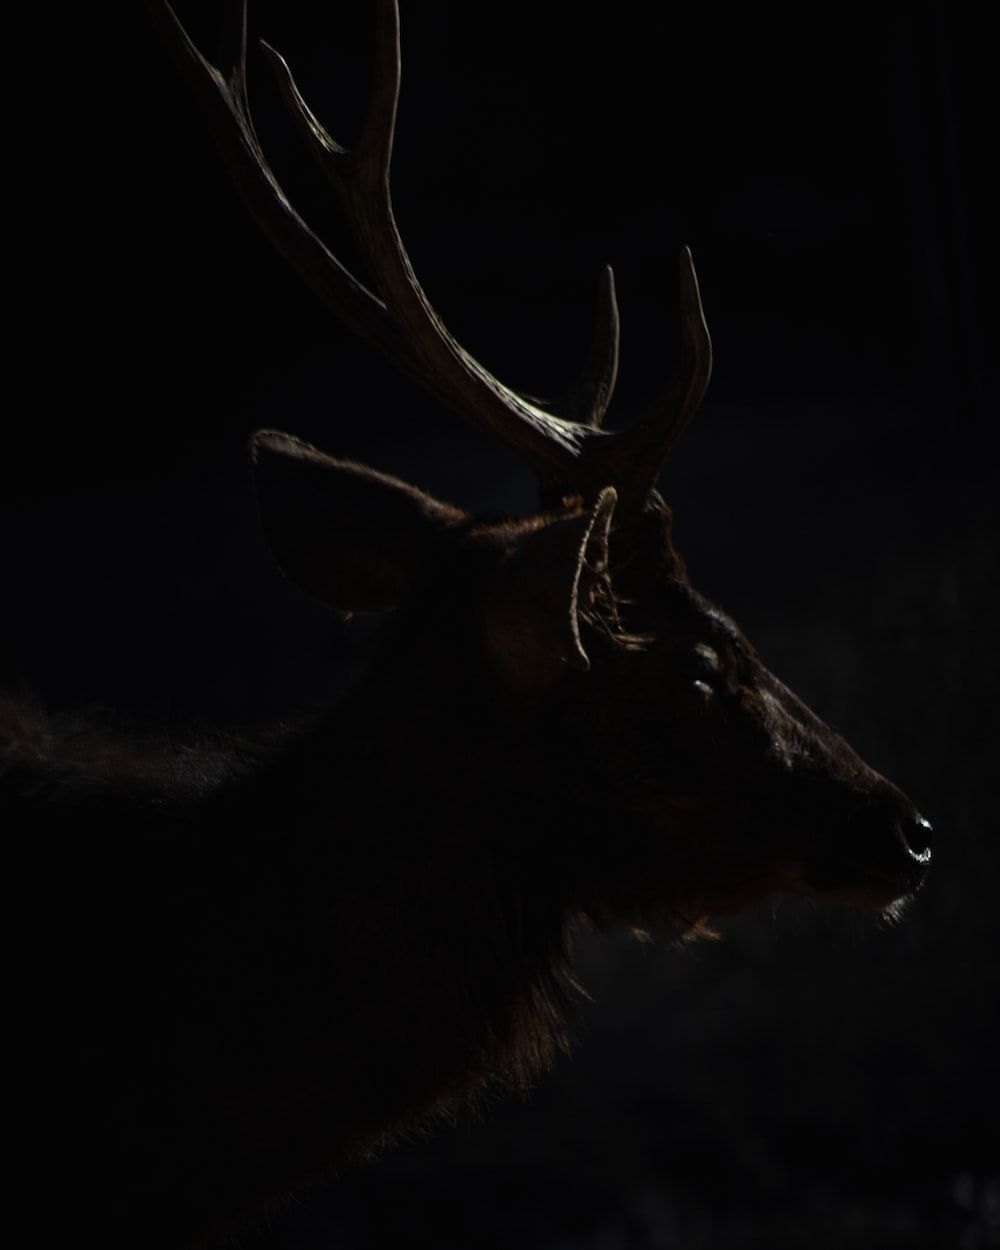 A deer with antlers in the dark. - Deer